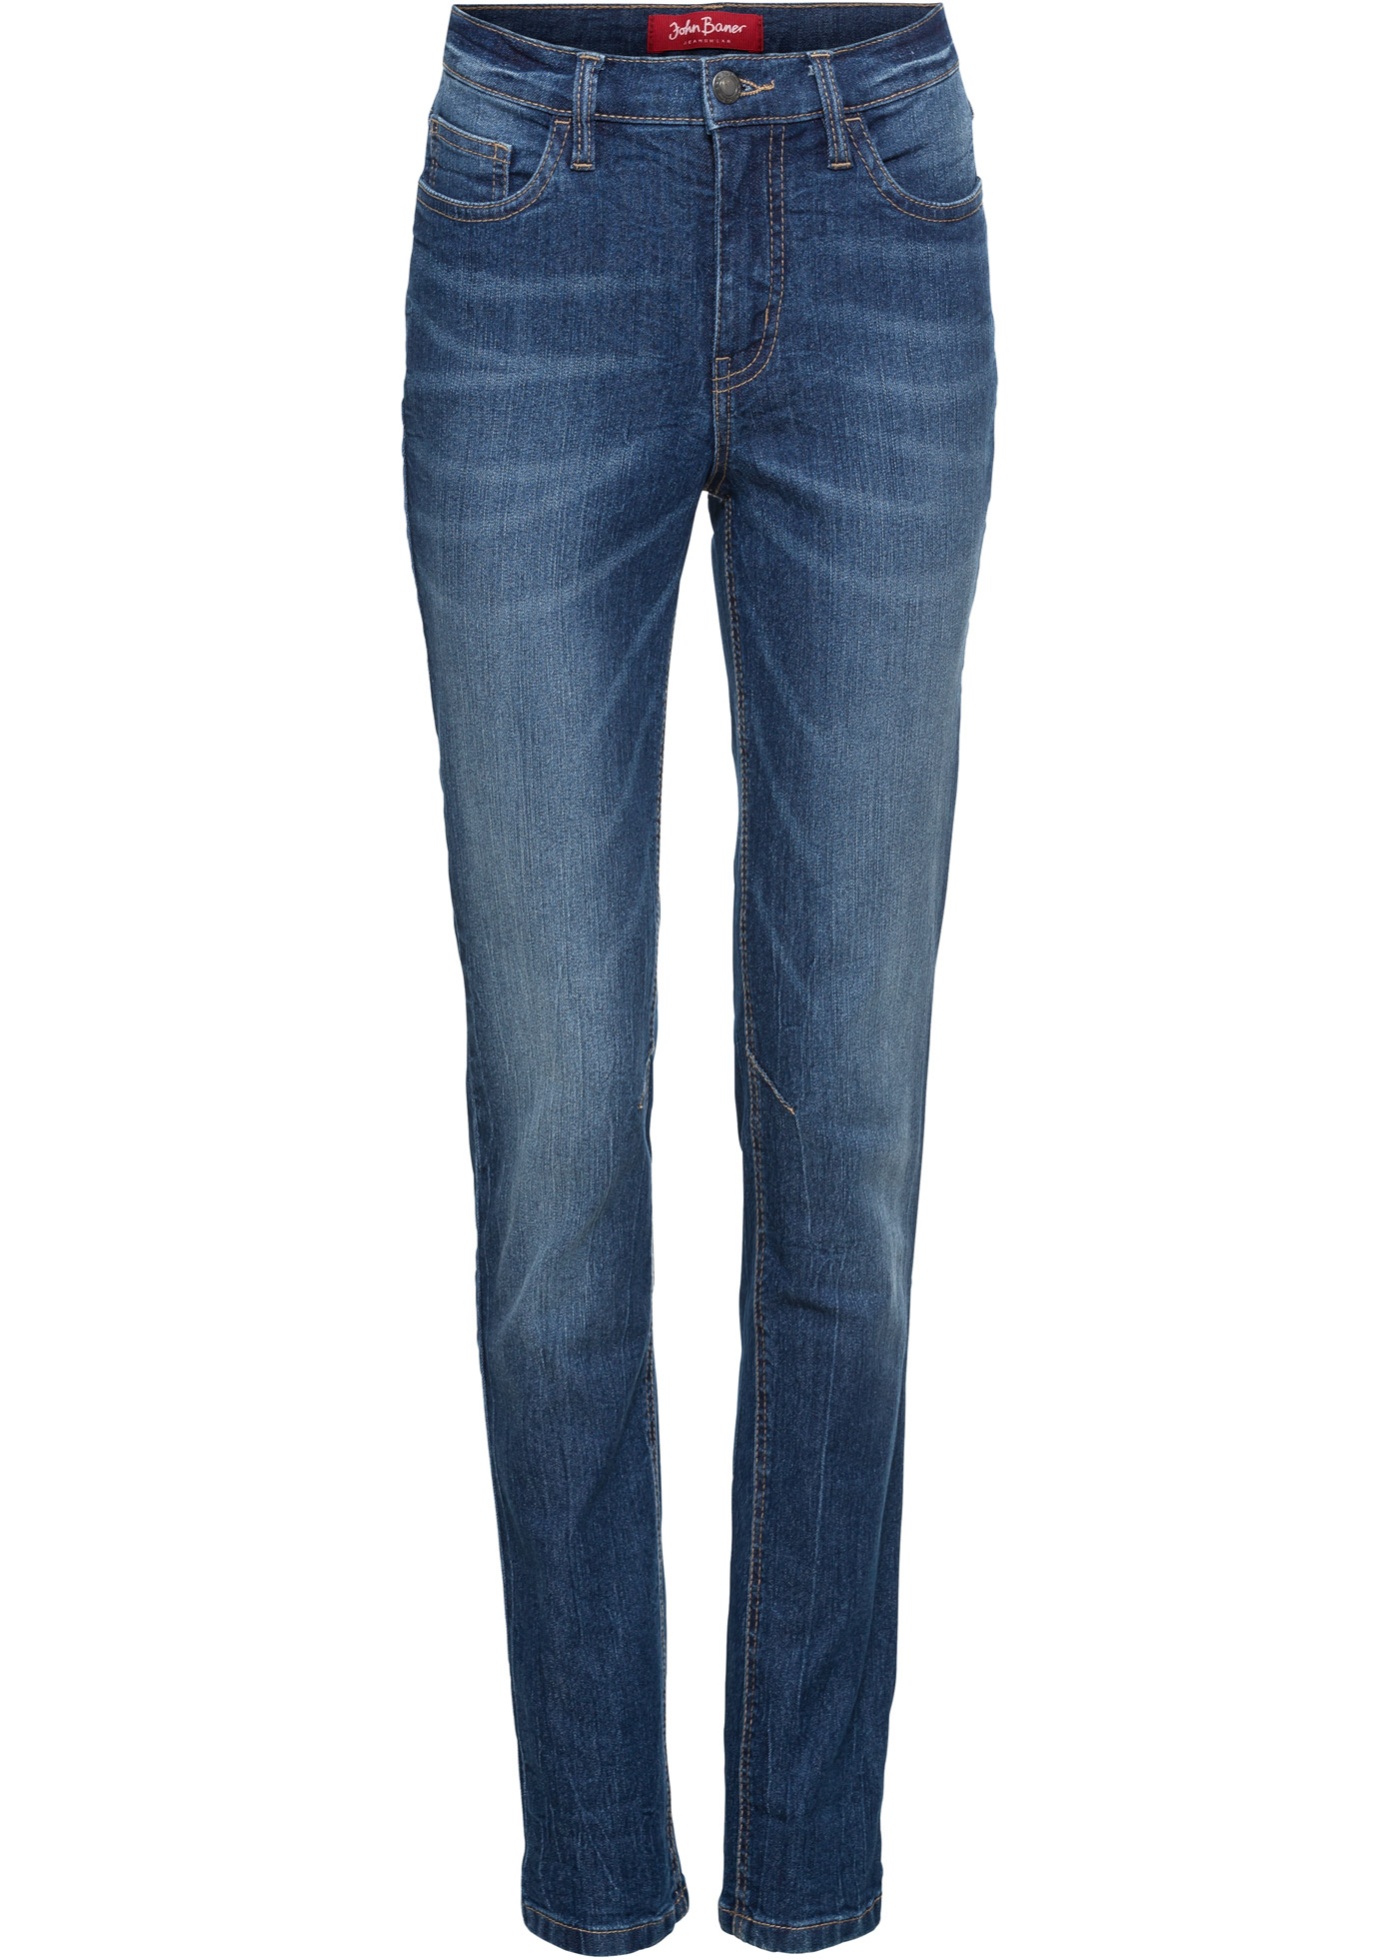 Modische Komfort Stretch Jeans Mit Abnähern In Kniehöhe Blau Normal 